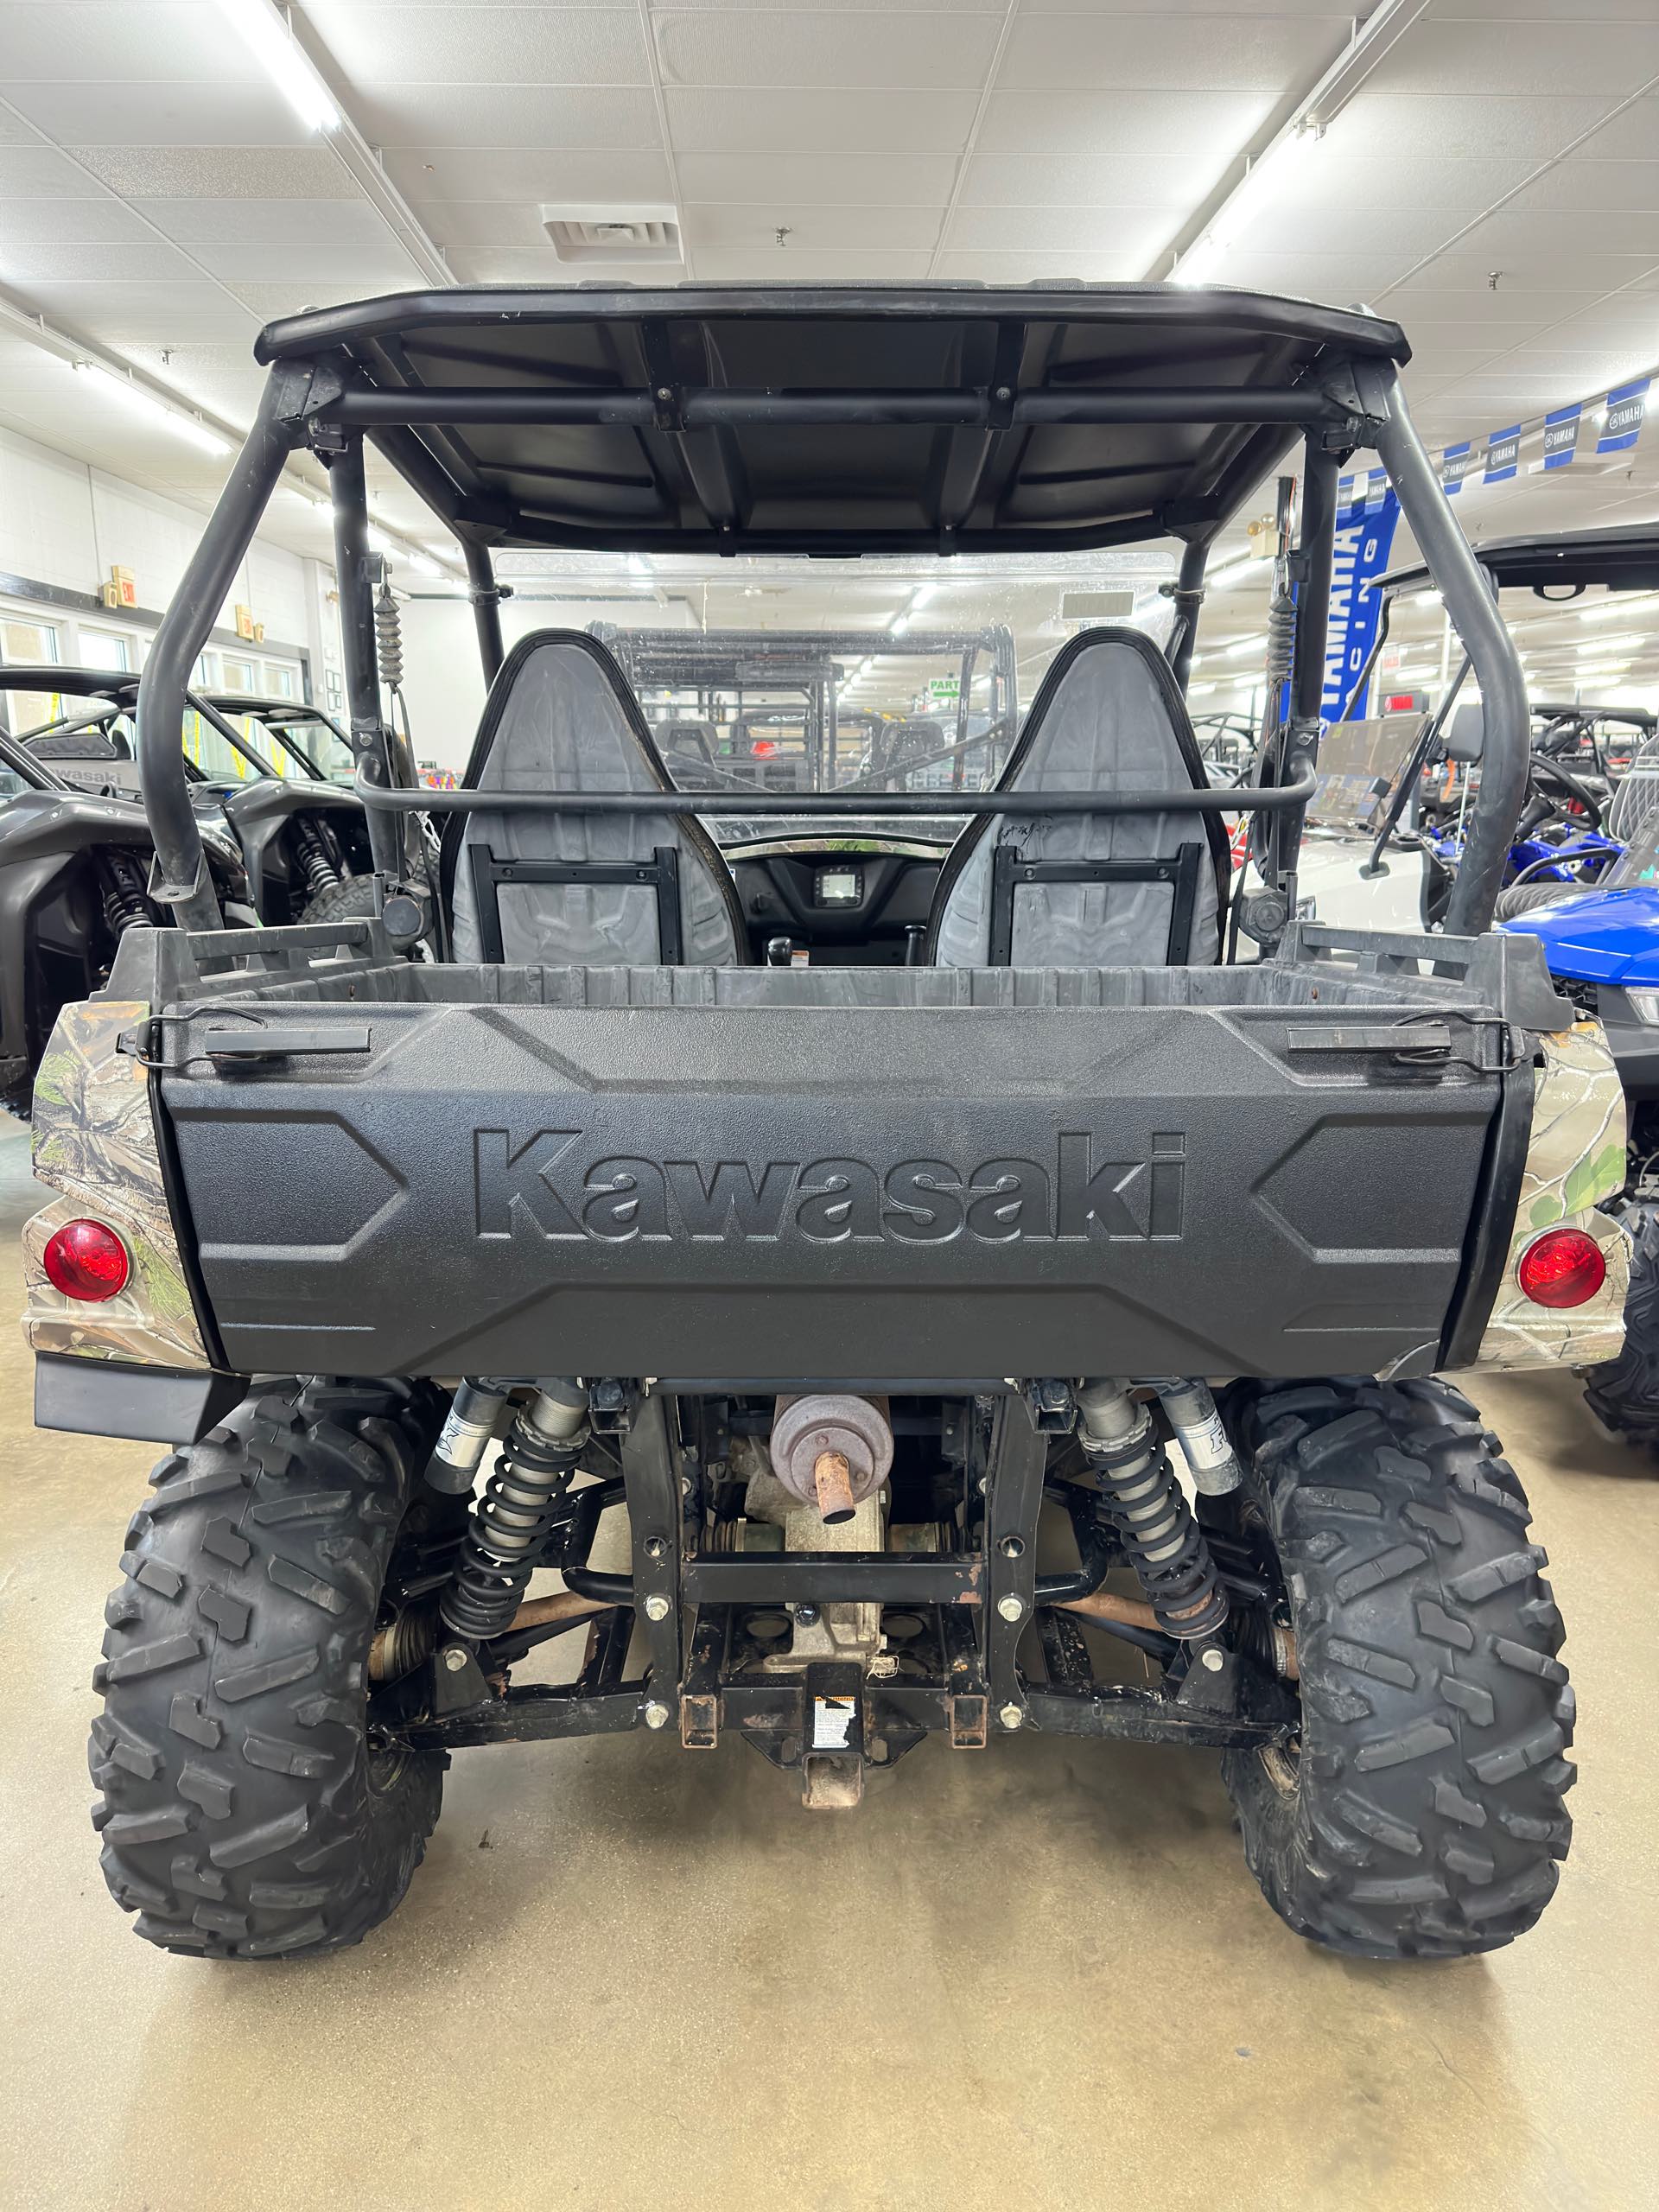 2015 Kawasaki Teryx Camo at ATVs and More